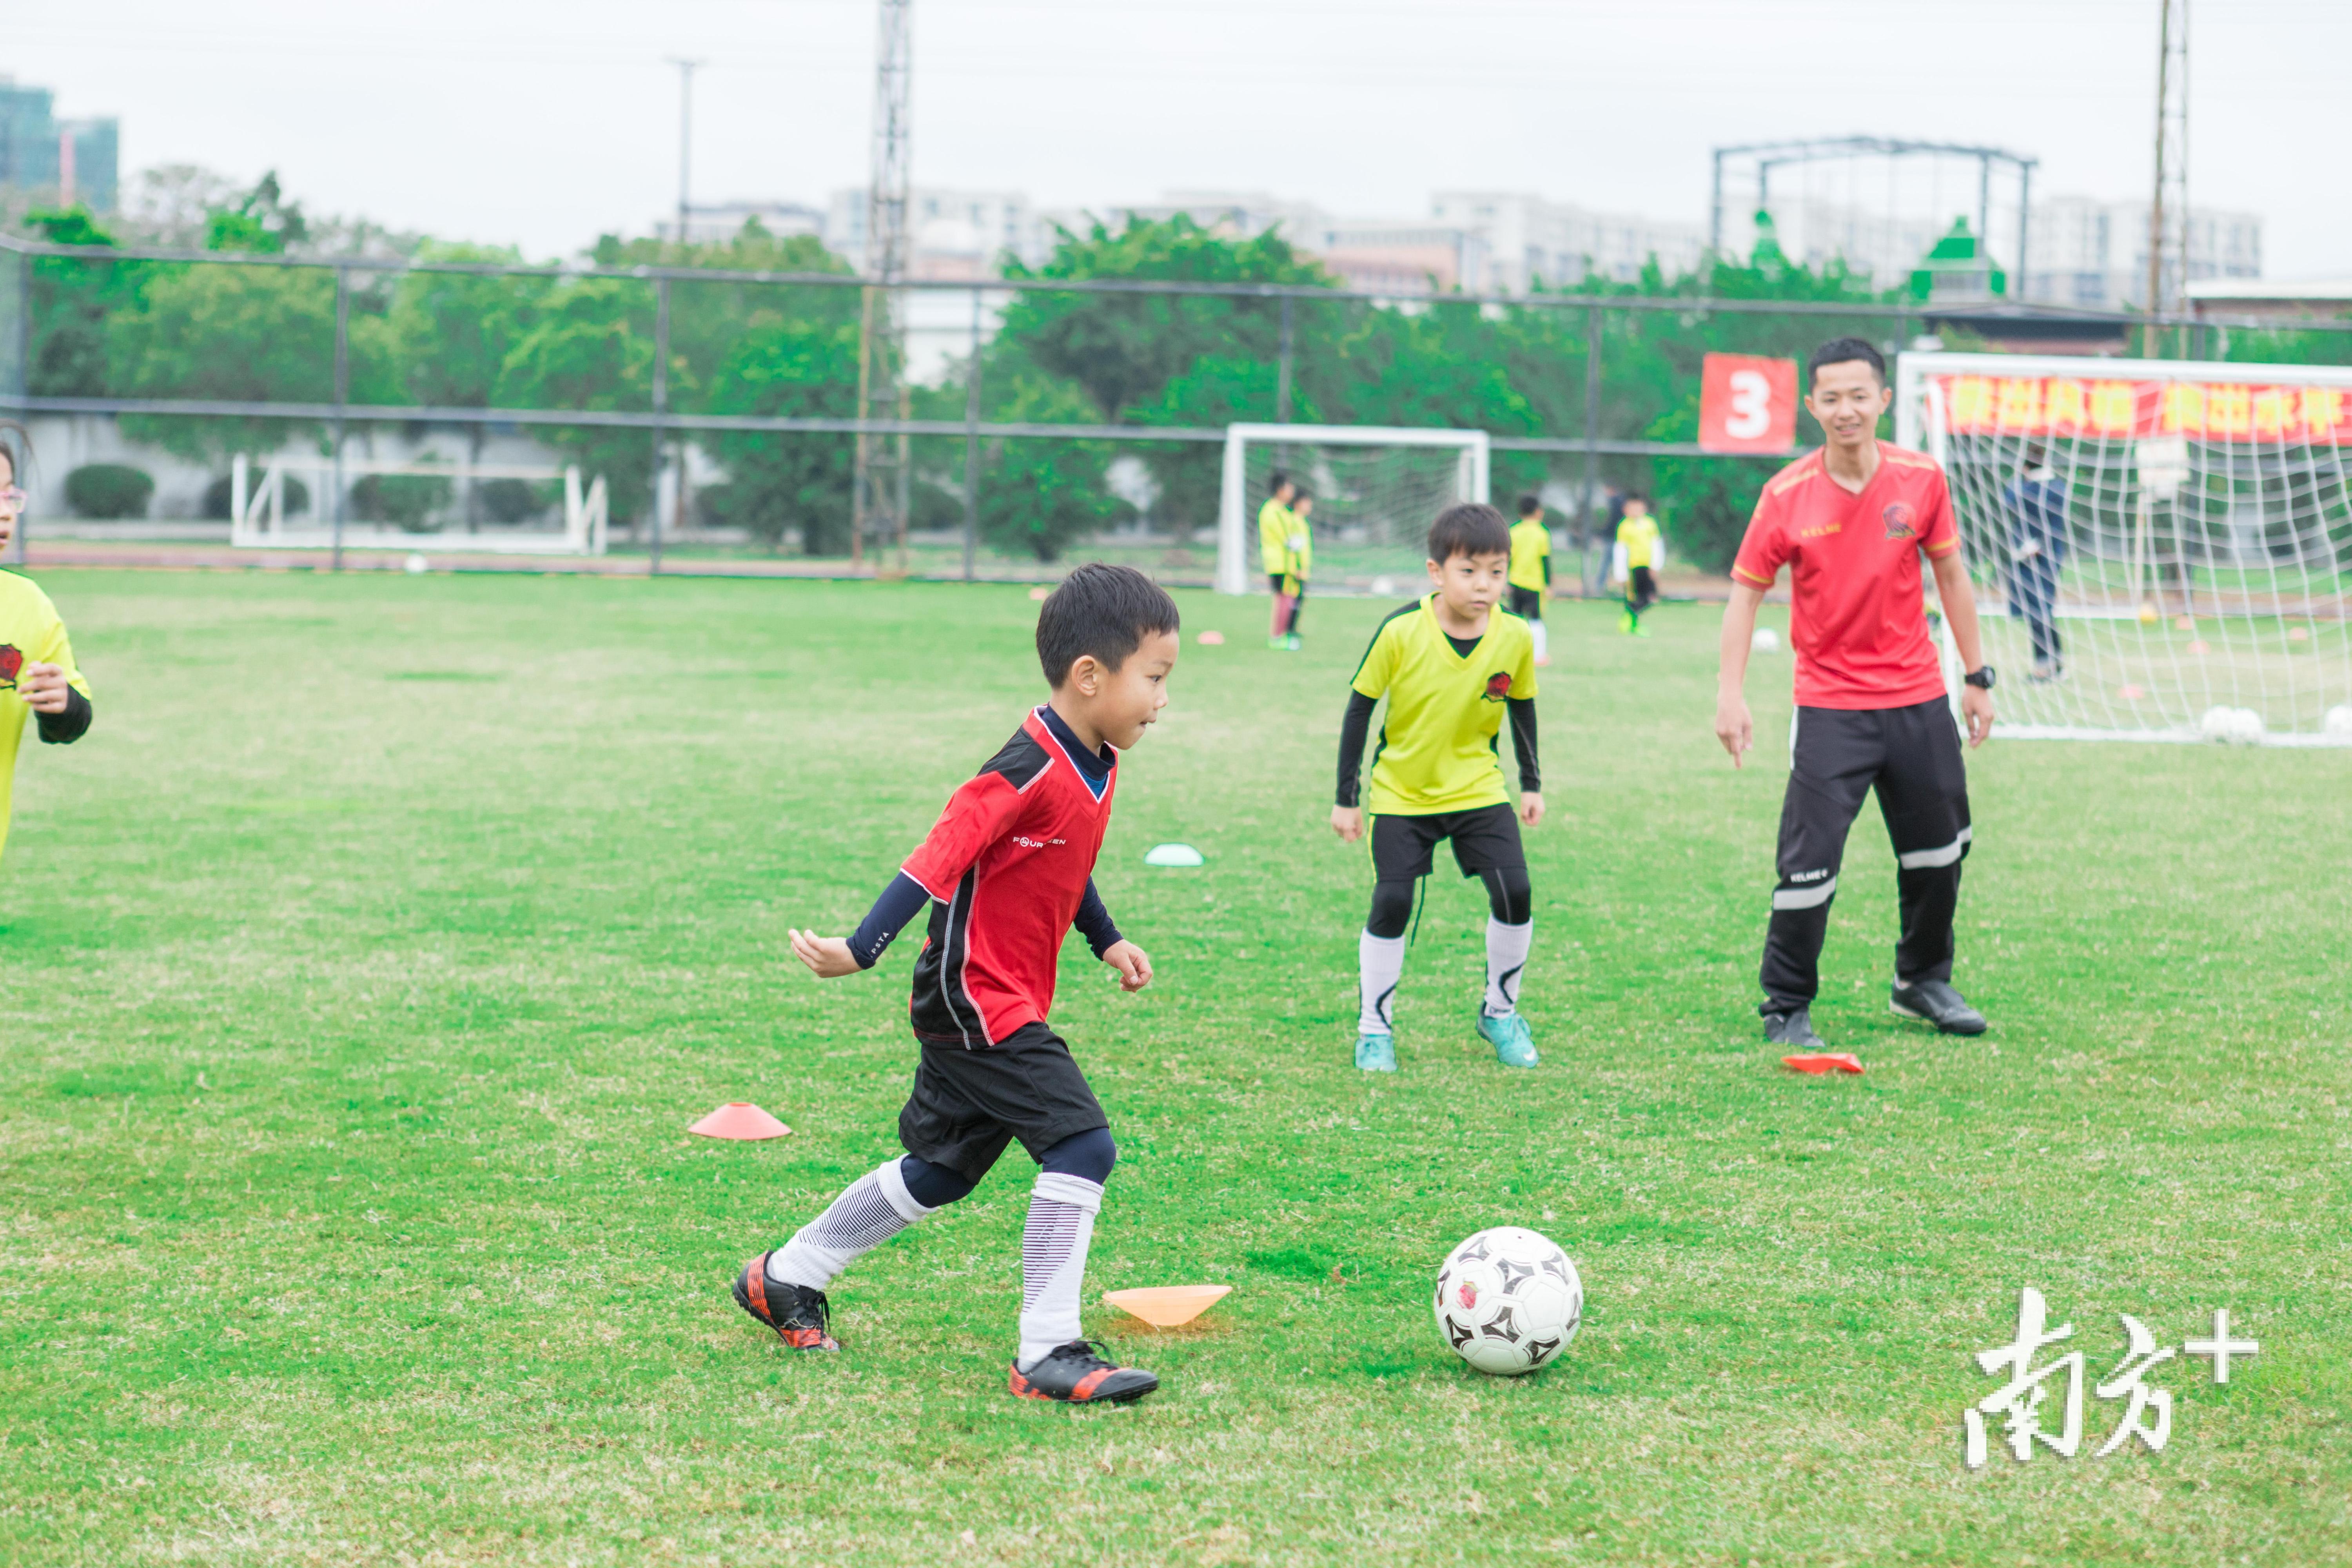 俱乐部总经理认为陈伦岳反应灵敏、协同作战能力强，是踢球的好苗子。